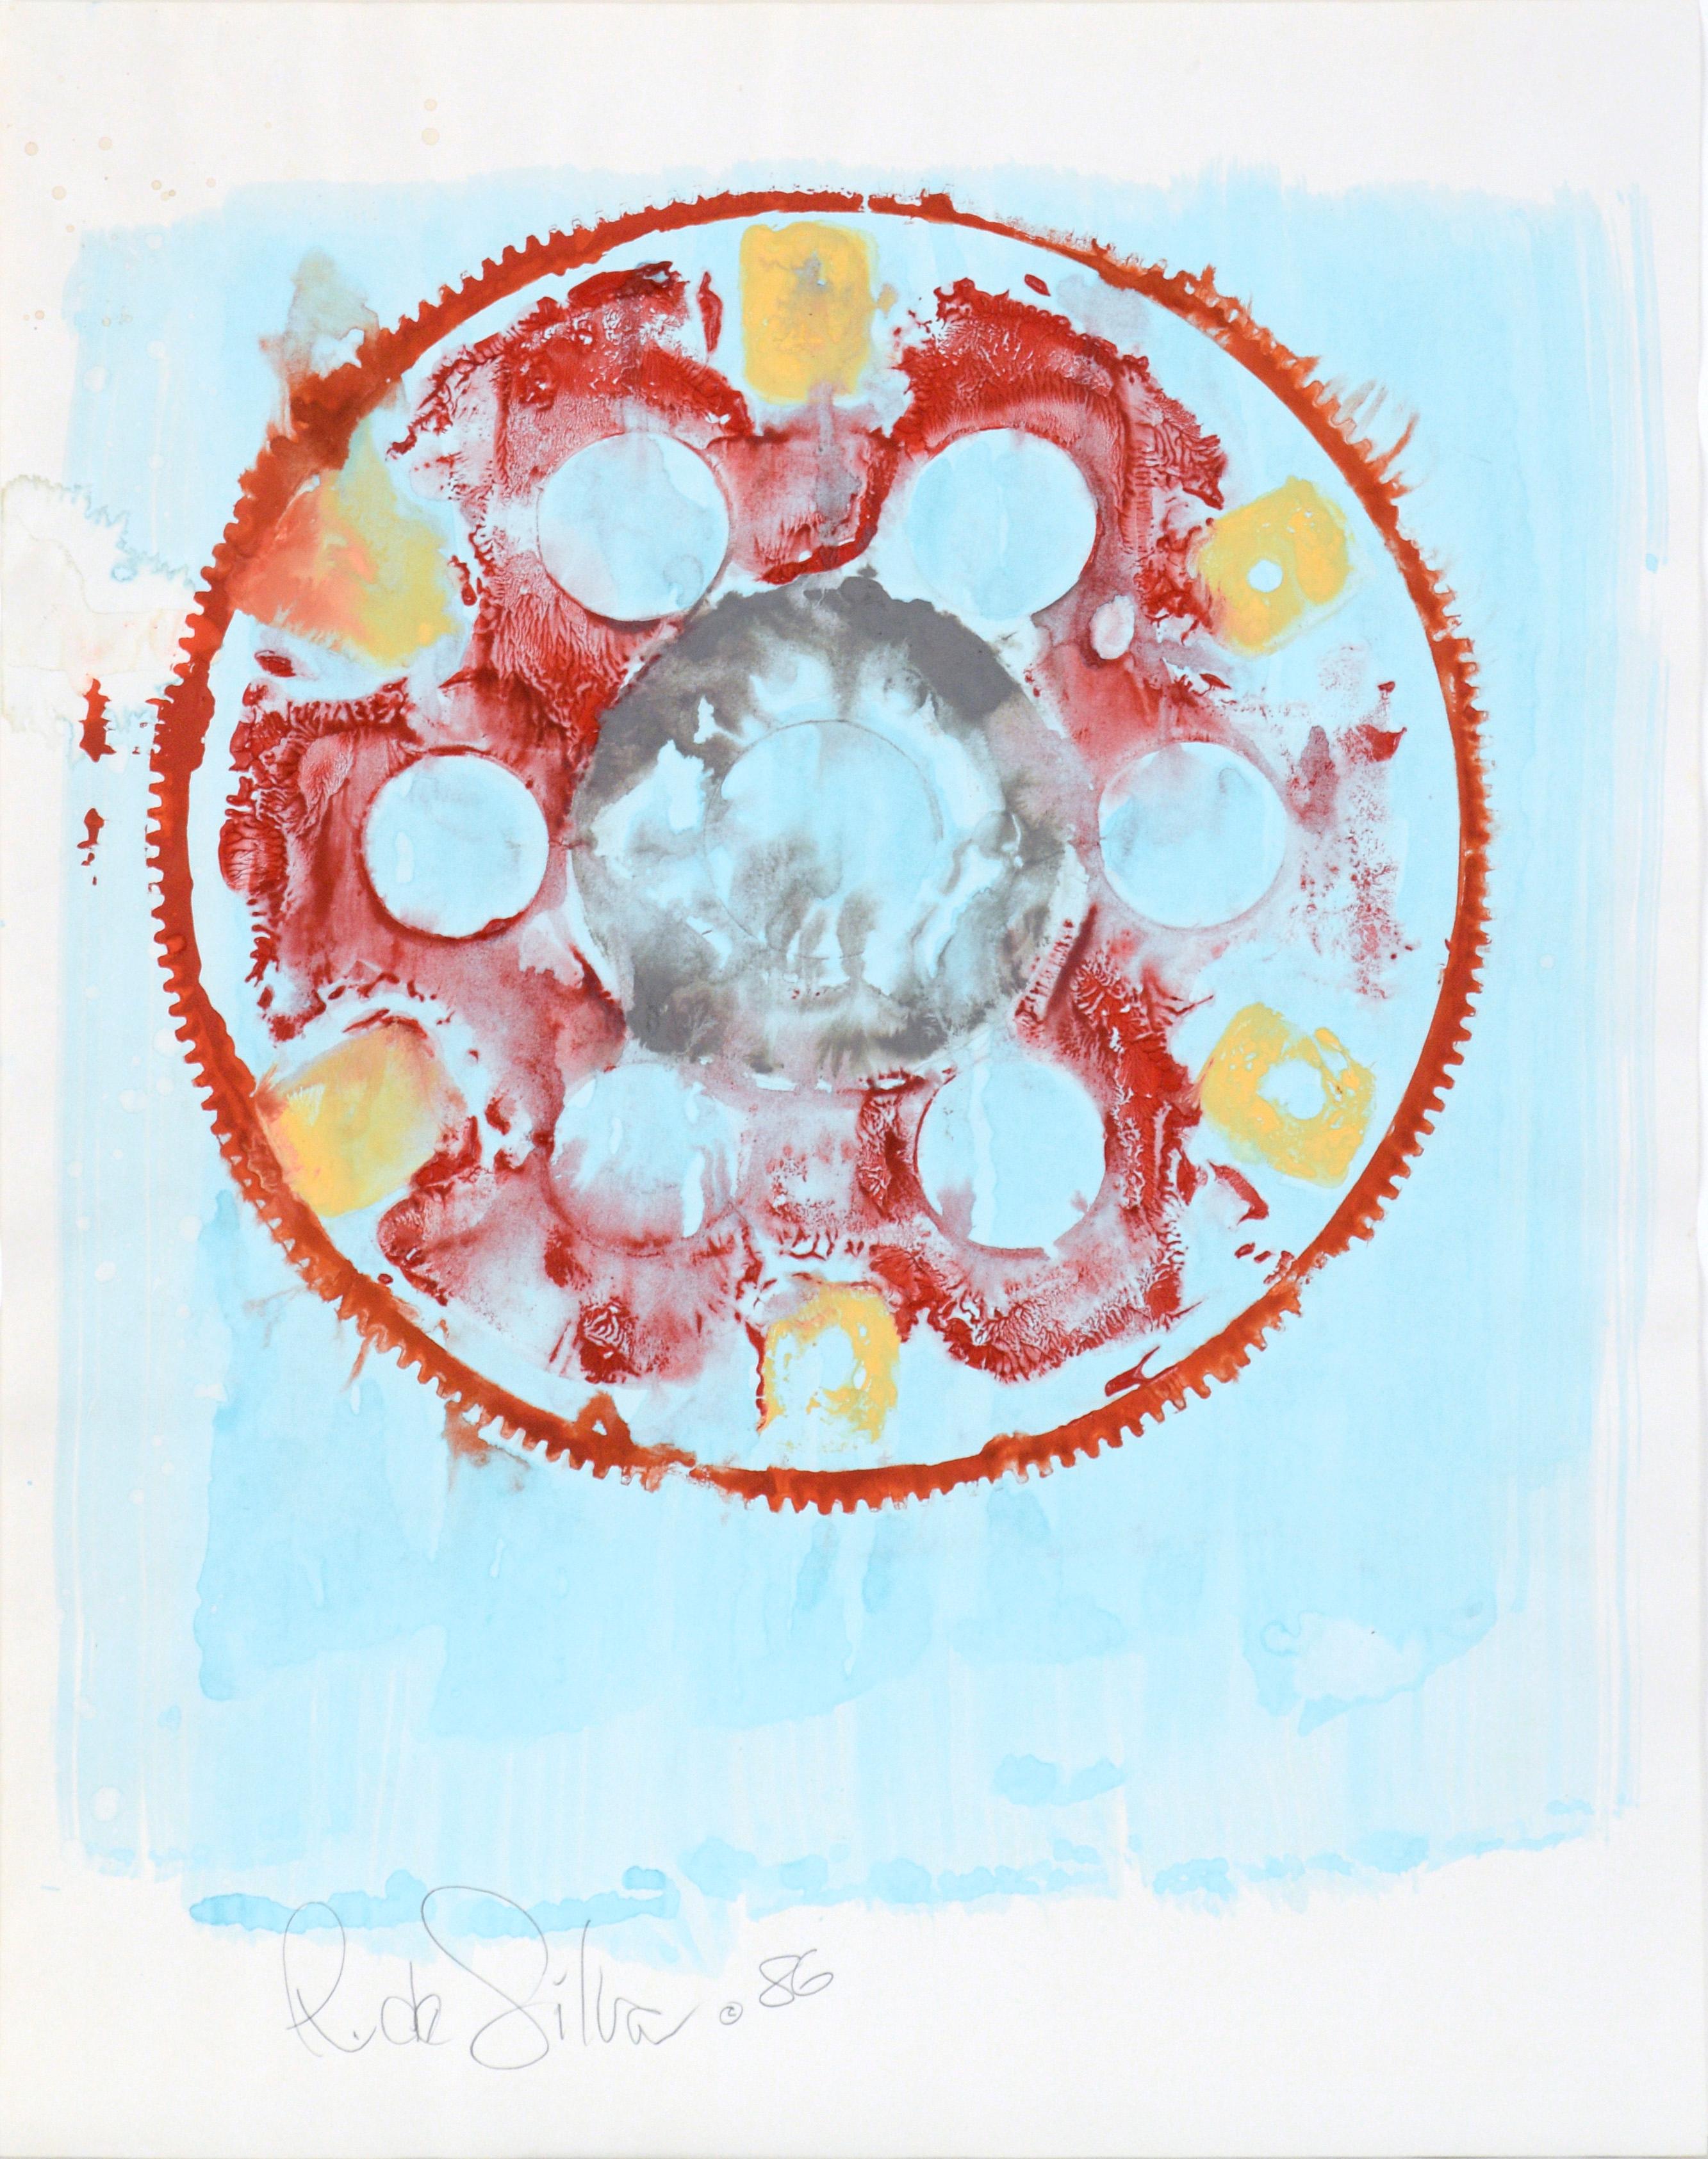 Abstract Painting Ricardo de Silva - Get in Gear II - Mandala d'expressionniste abstrait géométrique en acrylique sur papier